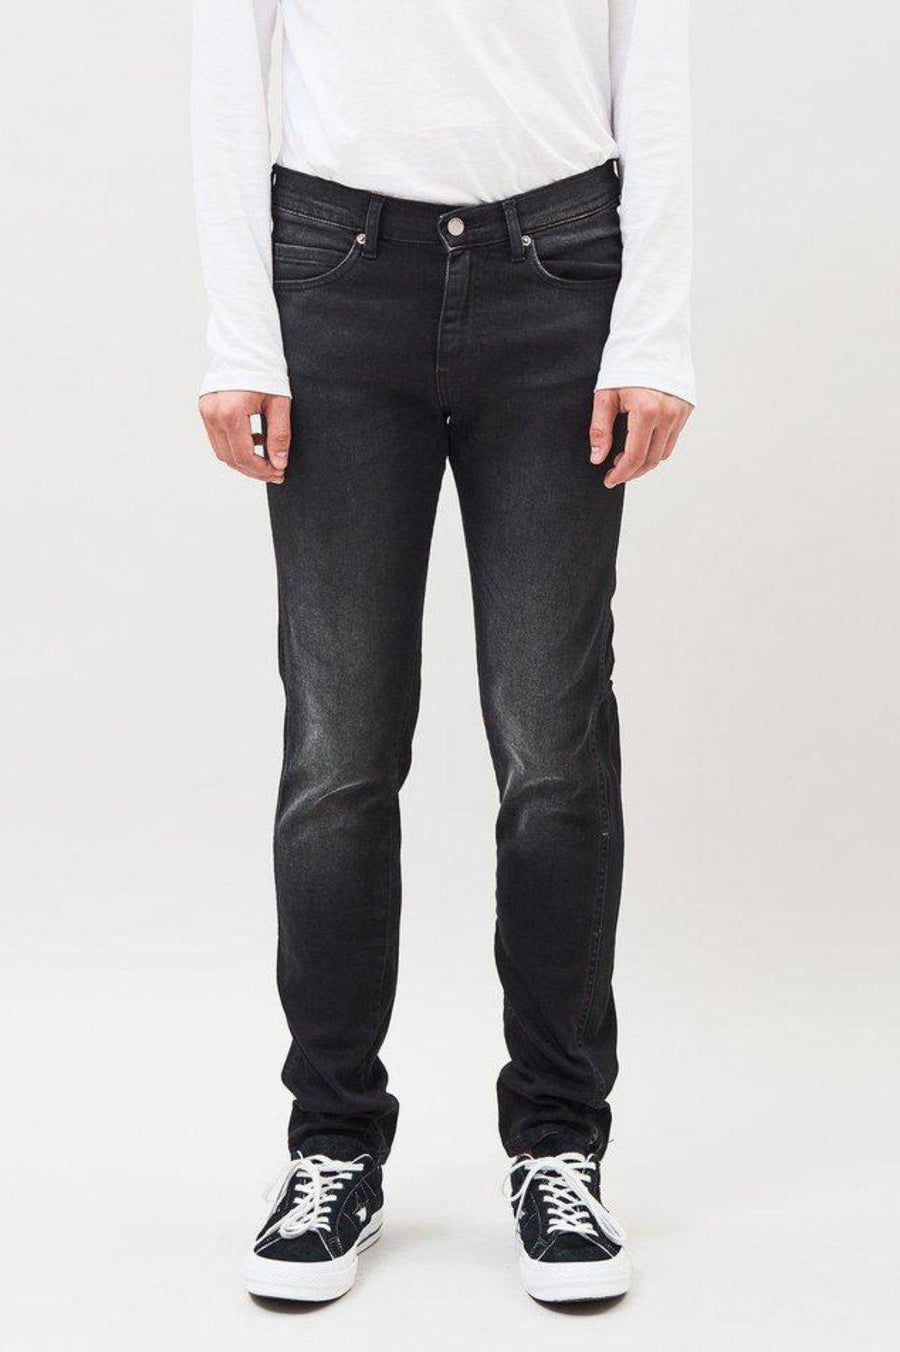 Snap Jeans - Ash Black - Dr Denim Jeans - Australia & NZ